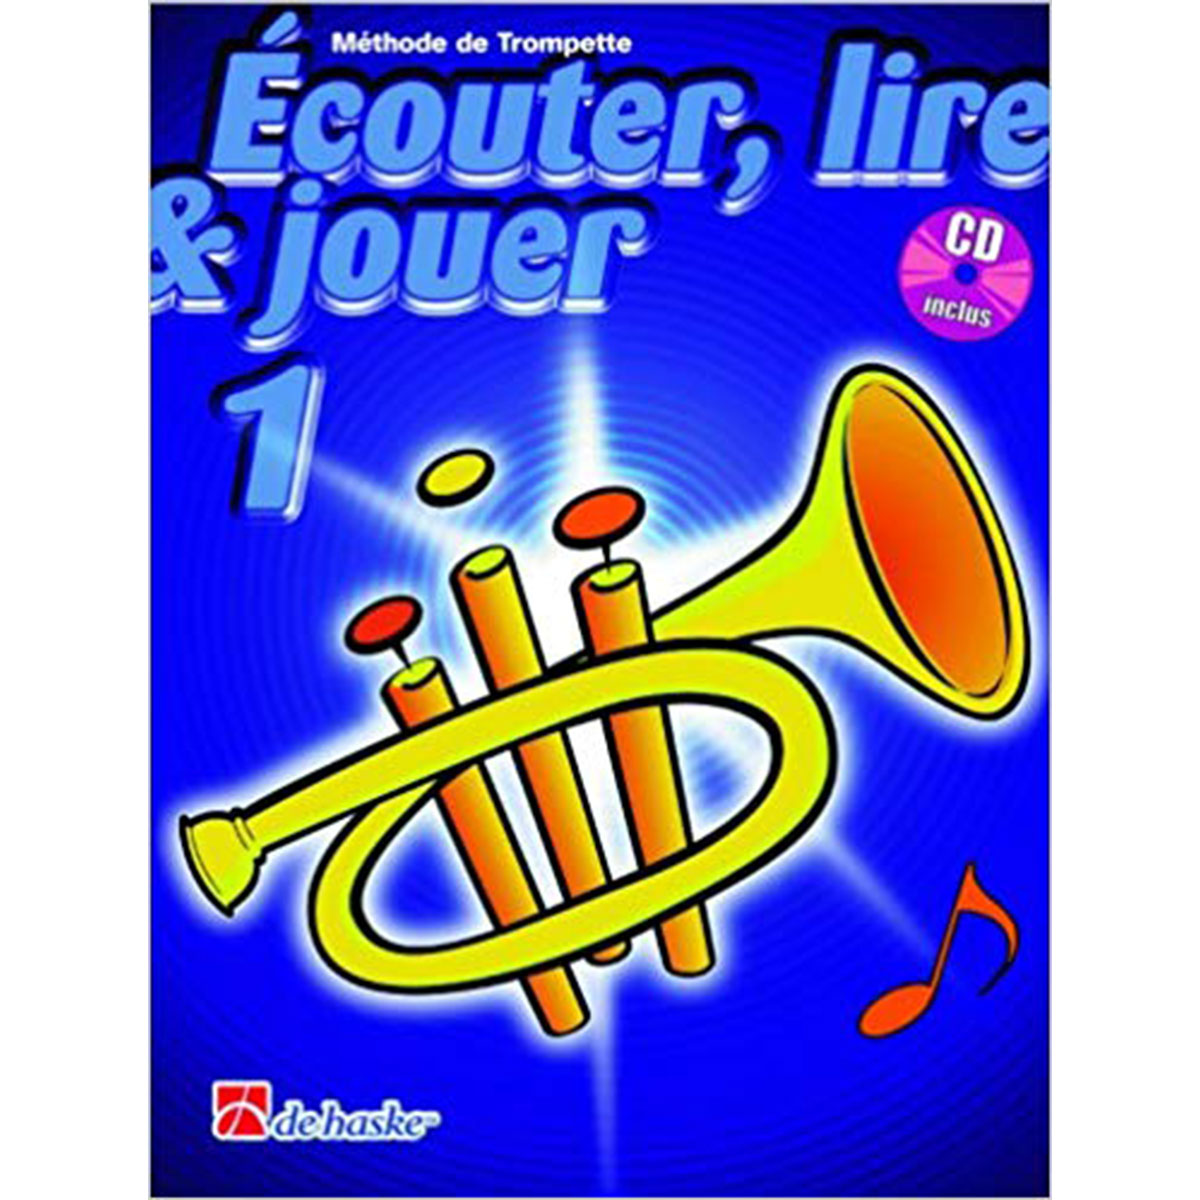 Ecouter, lire & jouer - Trompette - Vol.1